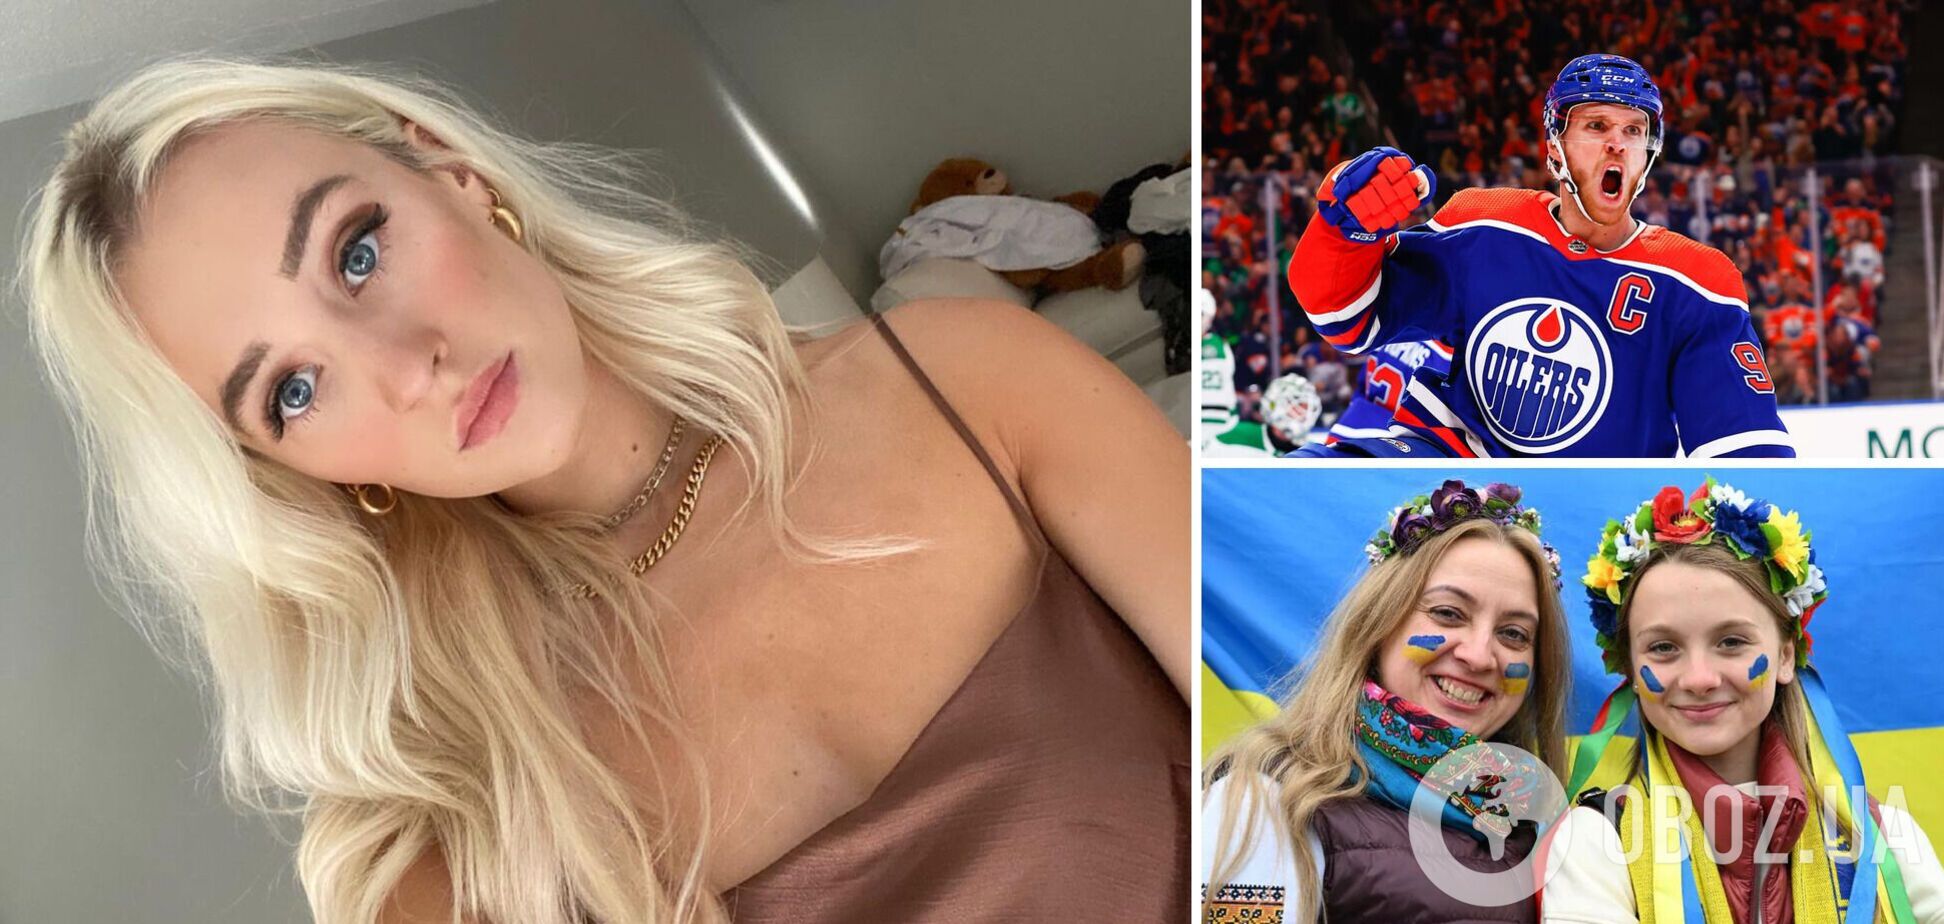 'У мене українська родина': дівчина зірки НХЛ зробила зізнання. Фото ефектної блондинки